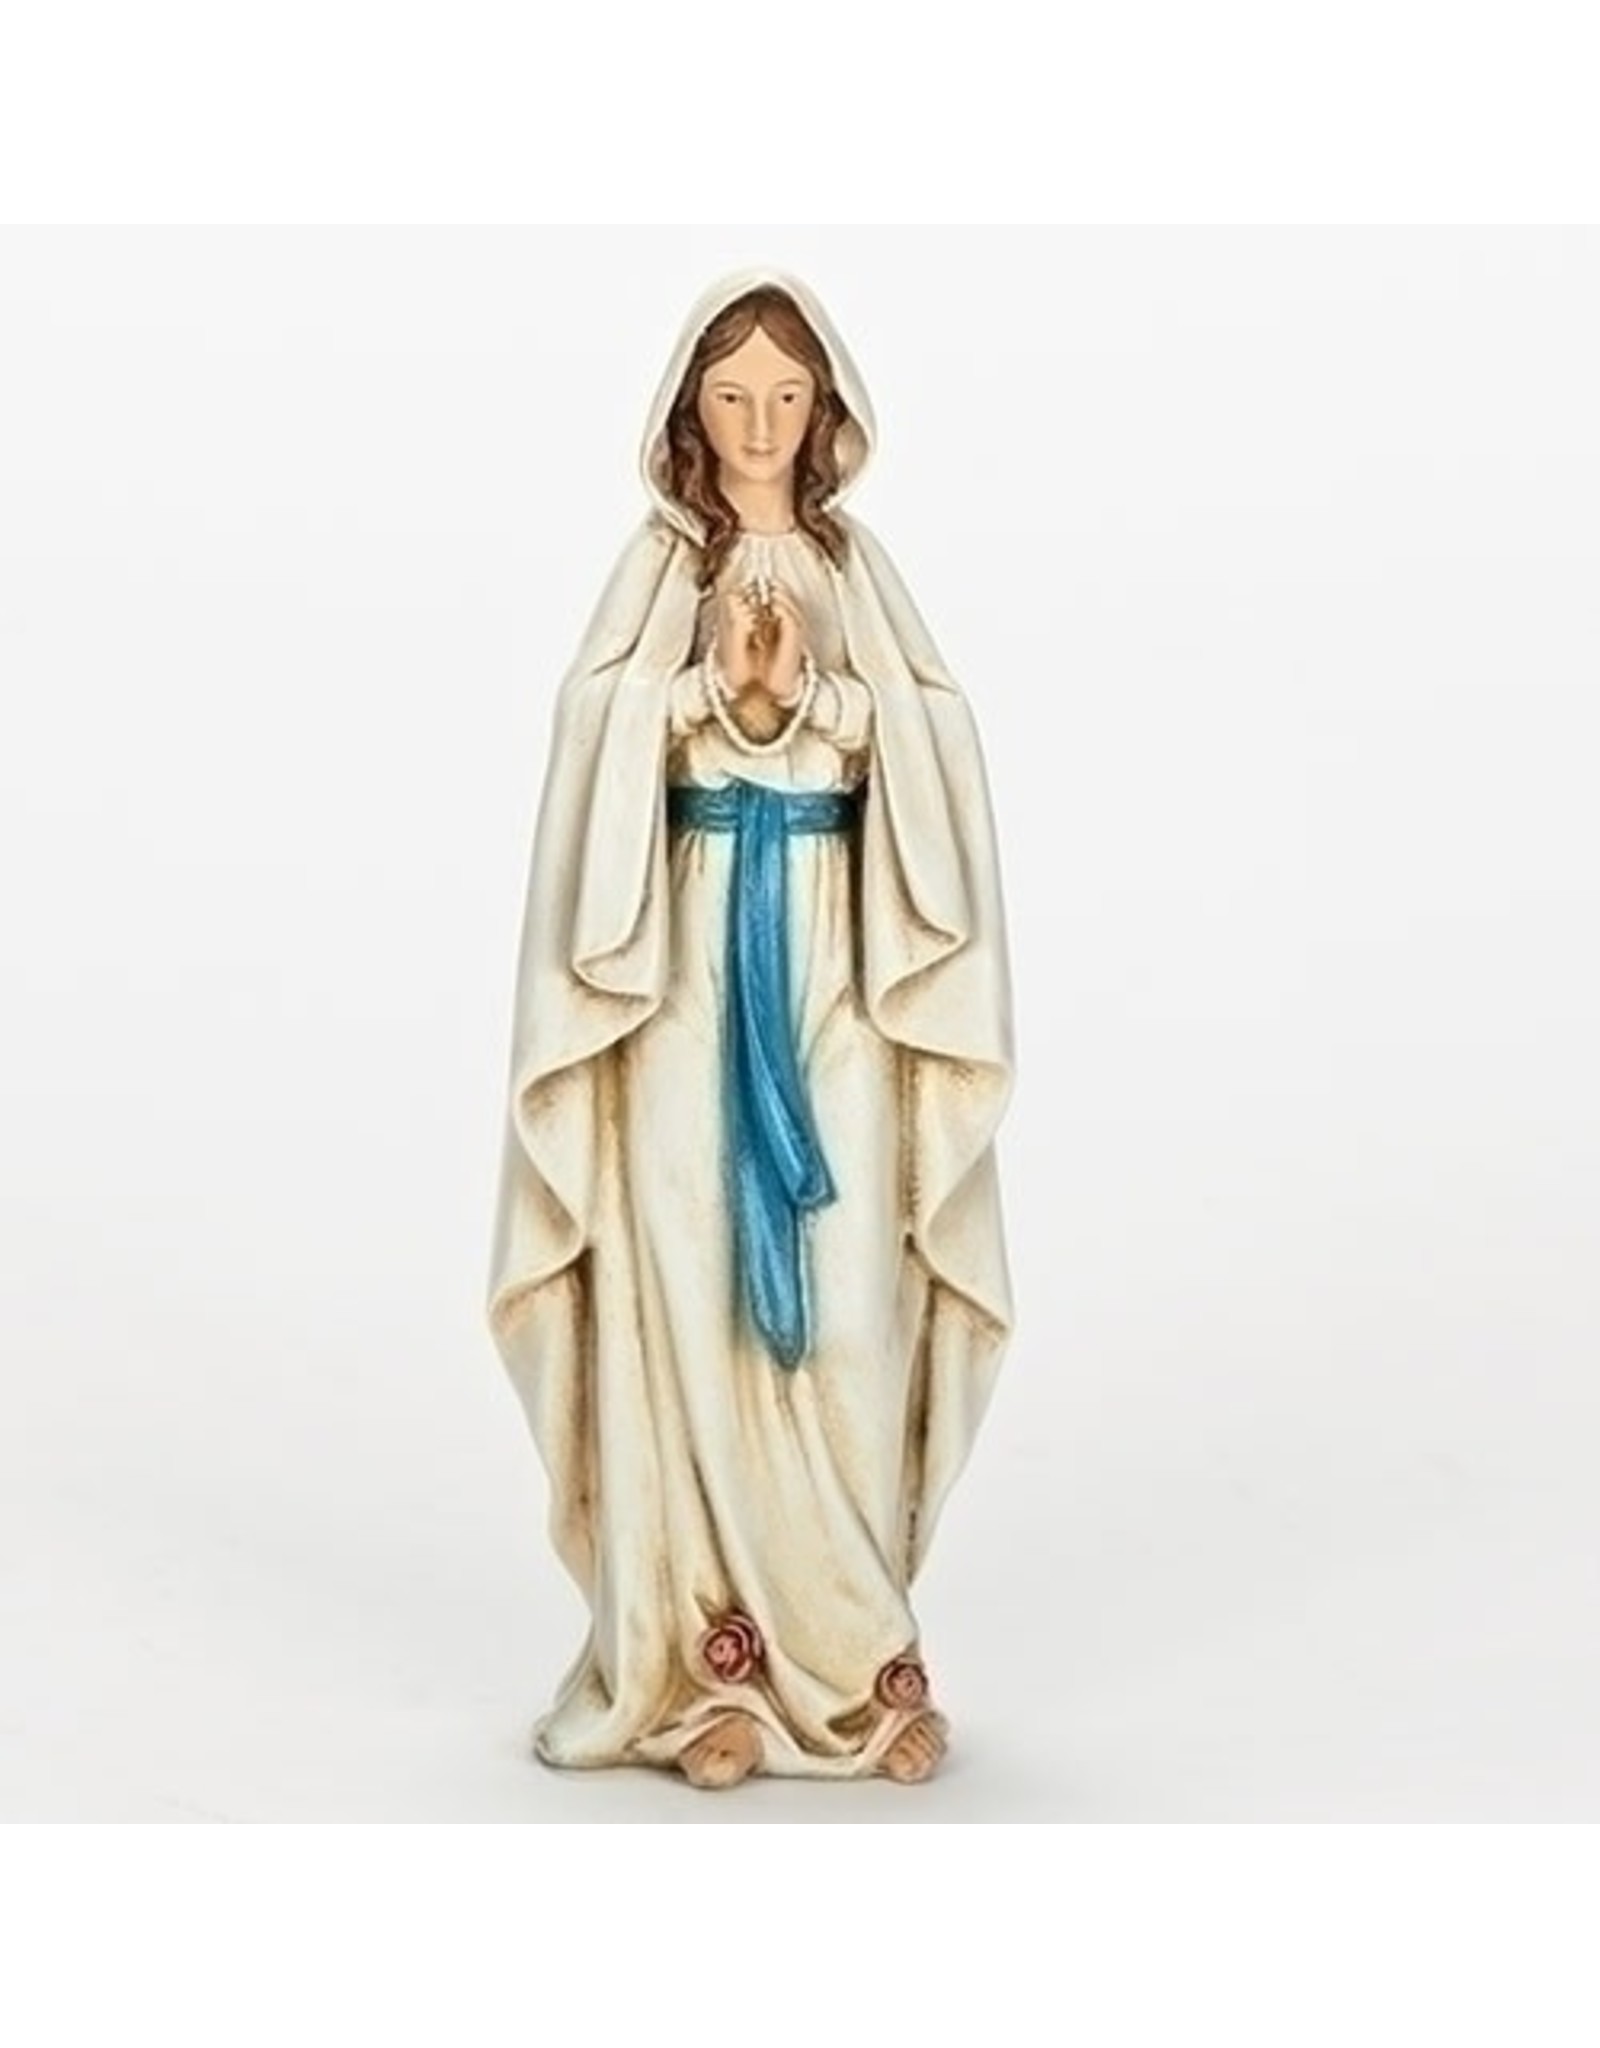 Our Lady of Lourdes Statue (Renaissance Collection), 6.25"